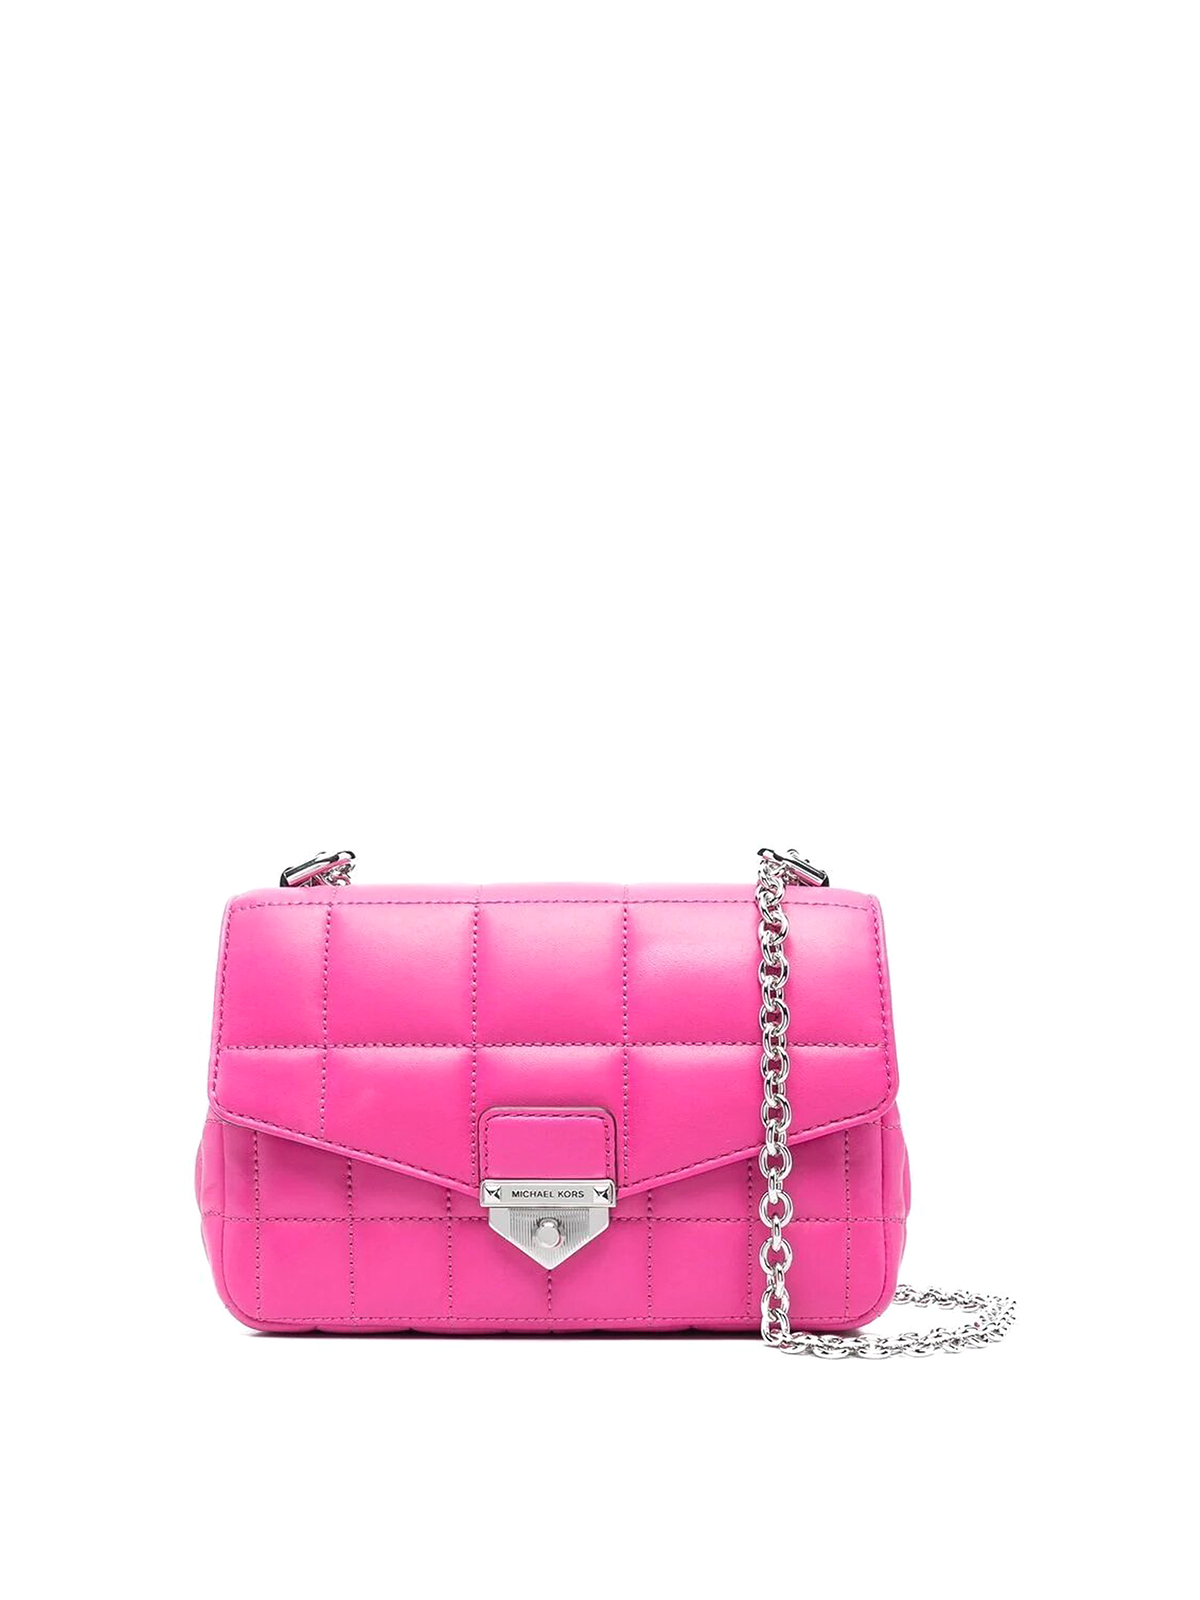 Michael Kors Soho Sm Chain Shoulder Bag In Pink